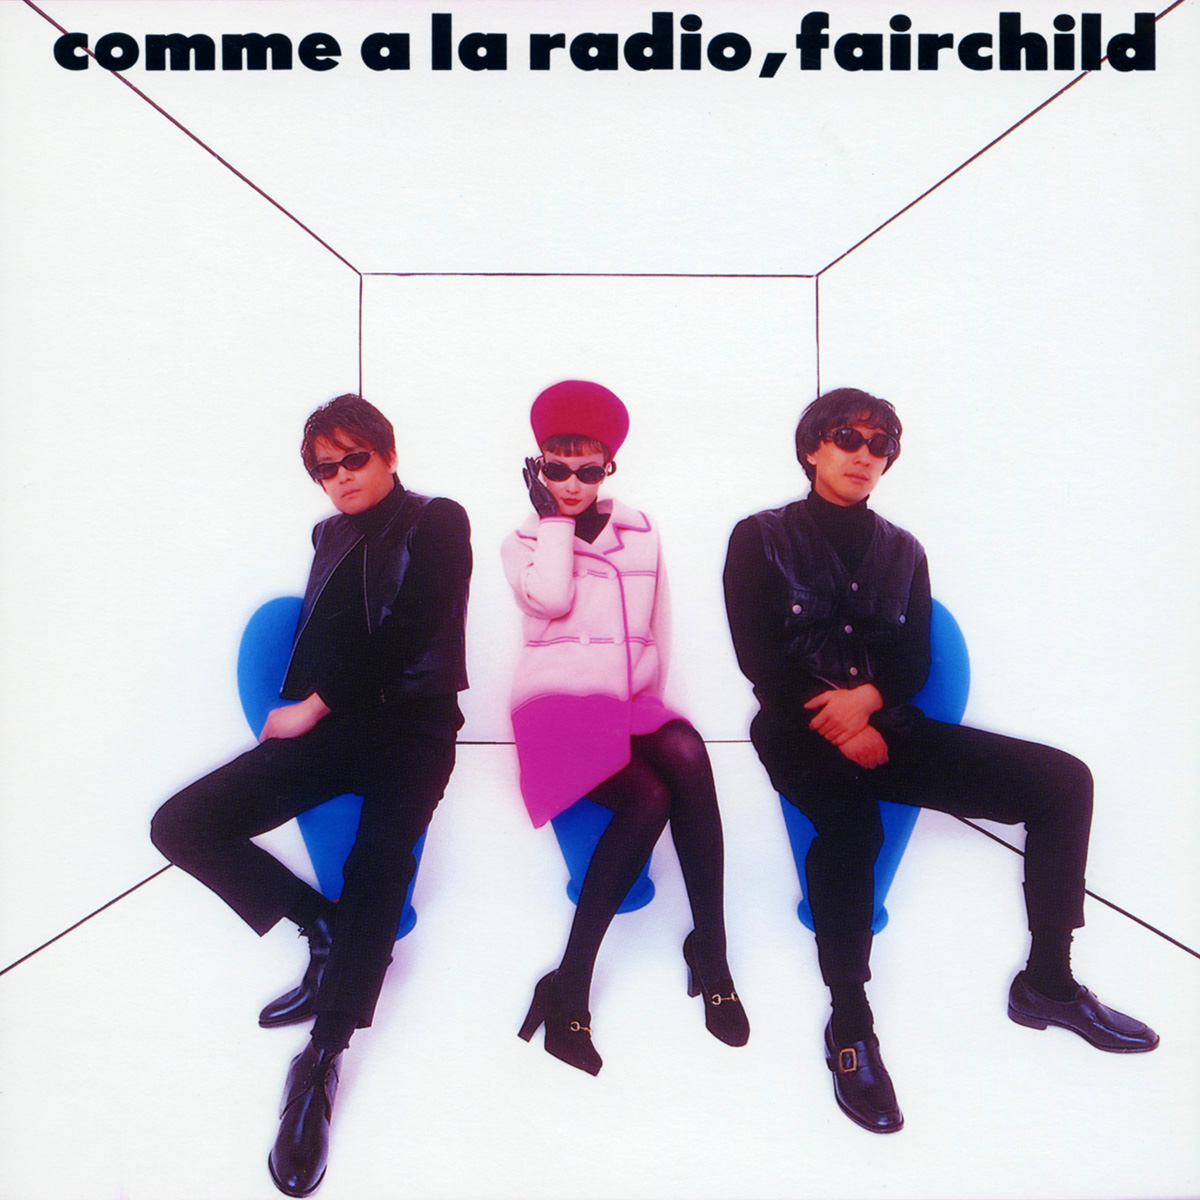 Fairchild “Comme a la Radio”